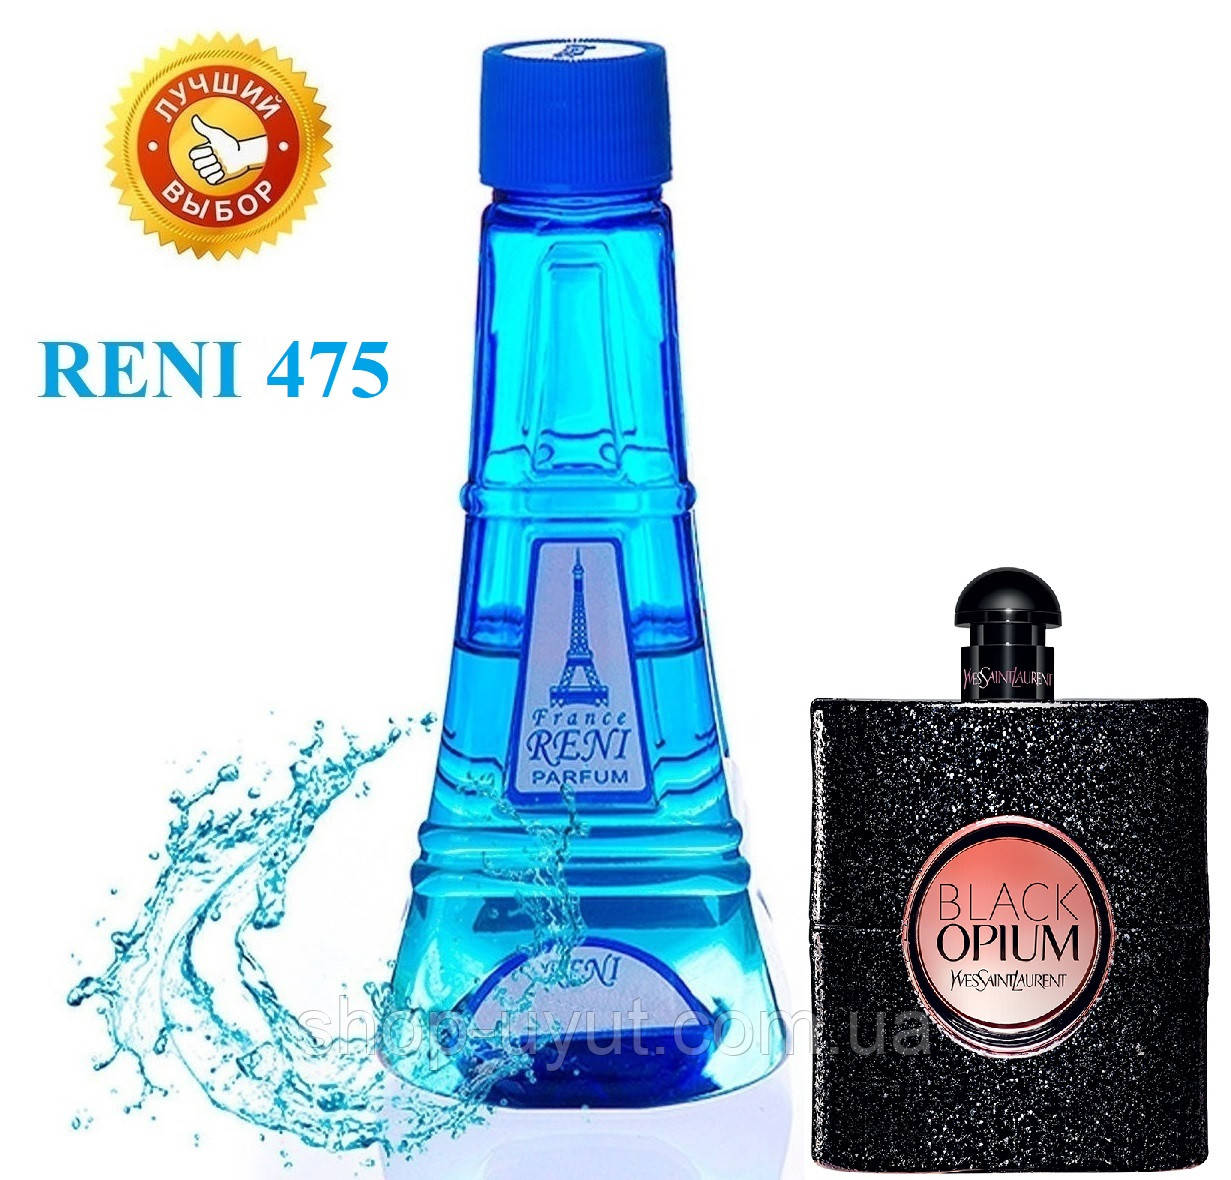 

Женский наливной парфюм Reni 475 аналог Opium Black YSL духи 100 мл